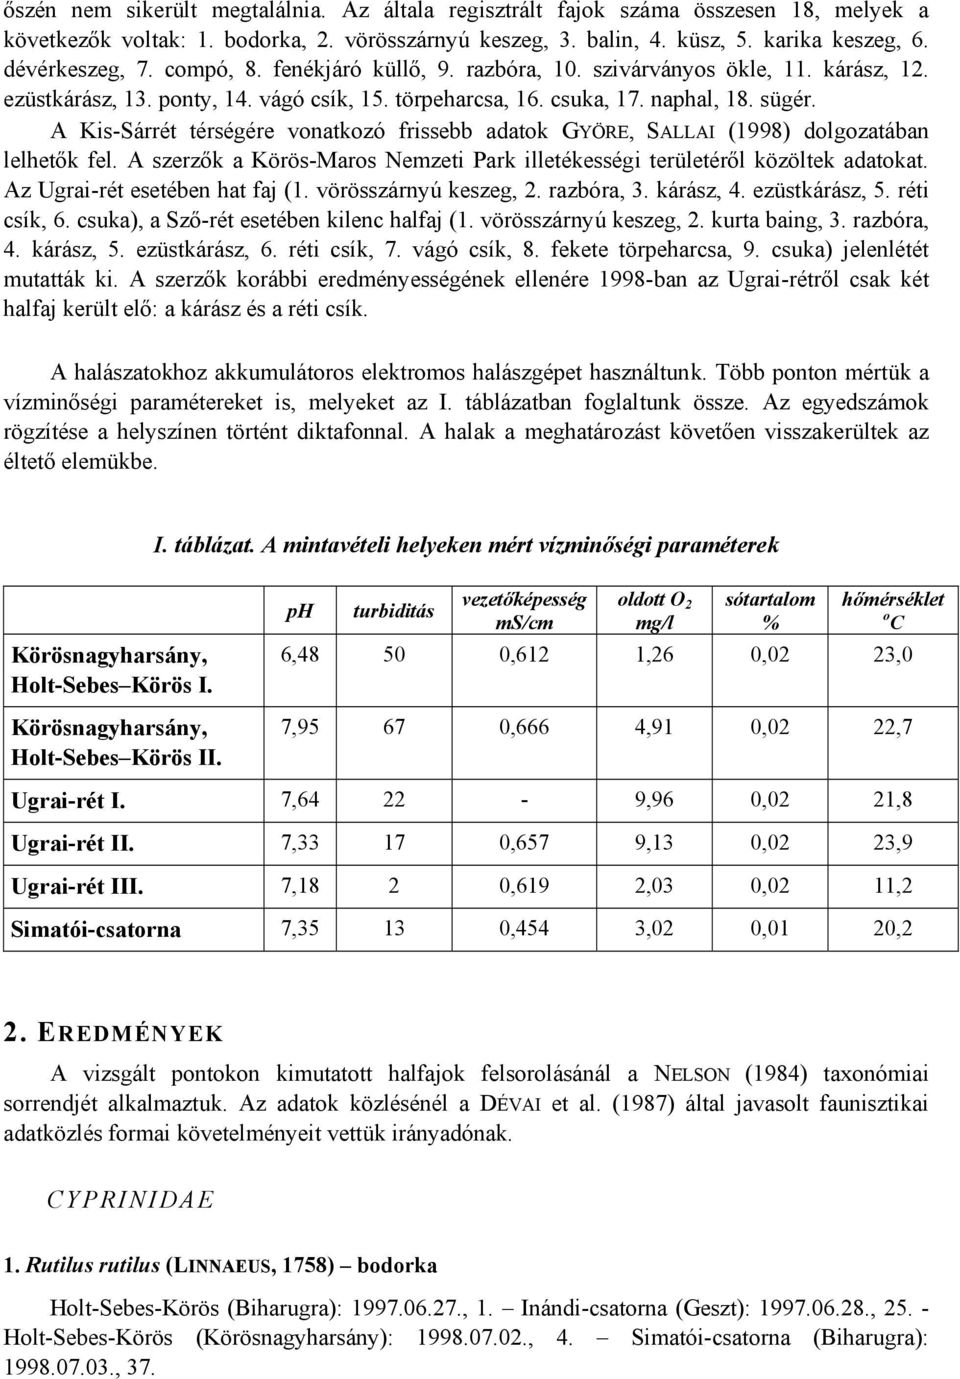 A Kis-Sárrét térségére vonatkozó frissebb adatok GYÖRE, SALLAI (1998) dolgozatában lelhetők fel. A szerzők a Körös-Maros Nemzeti Park illetékességi területéről közöltek adatokat.